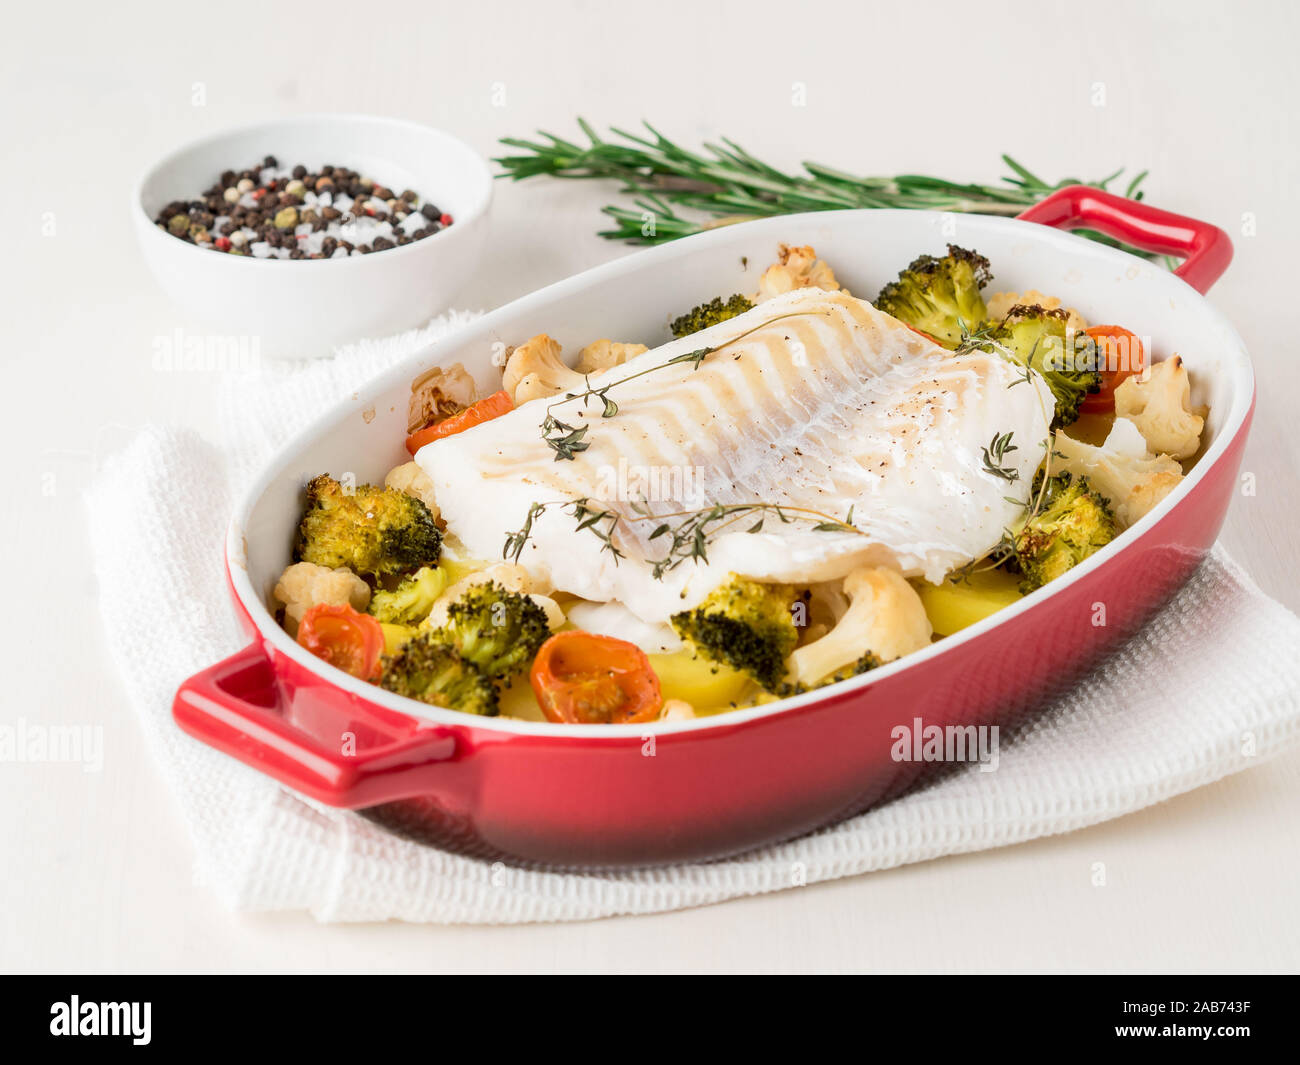 Kabeljau Fisch im Ofen gebacken mit Gemüse - Gesunde Ernährung Gesunde  Ernährung. Helle Holz- Hintergrund, Seitenansicht Stockfotografie - Alamy